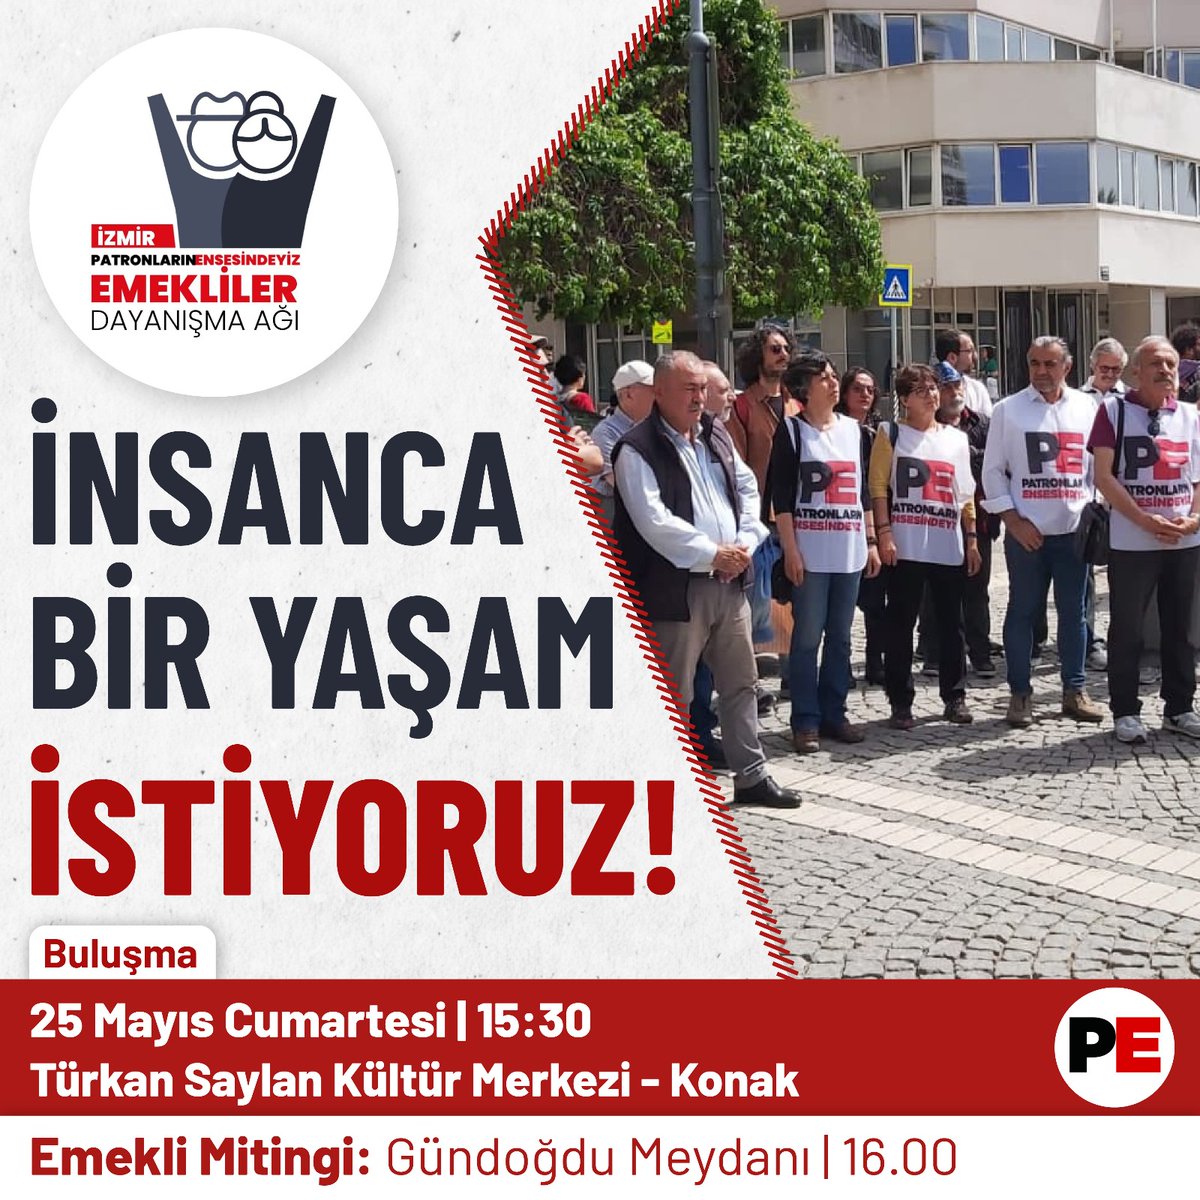 🗓️ 25 Mayıs Cumartesi, 🕞 15.30'da 📍 Türkan Saylan Kültür Merkezi önünde buluşuyor, 16.00'da Gündoğdu Meydanı'nda gerçekleştirilecek Emekli Mitingi'ne katılıyoruz. Gelin, omuz omuza verelim, 'İnsanca bir yaşam istiyoruz' sesini yükseltelim!